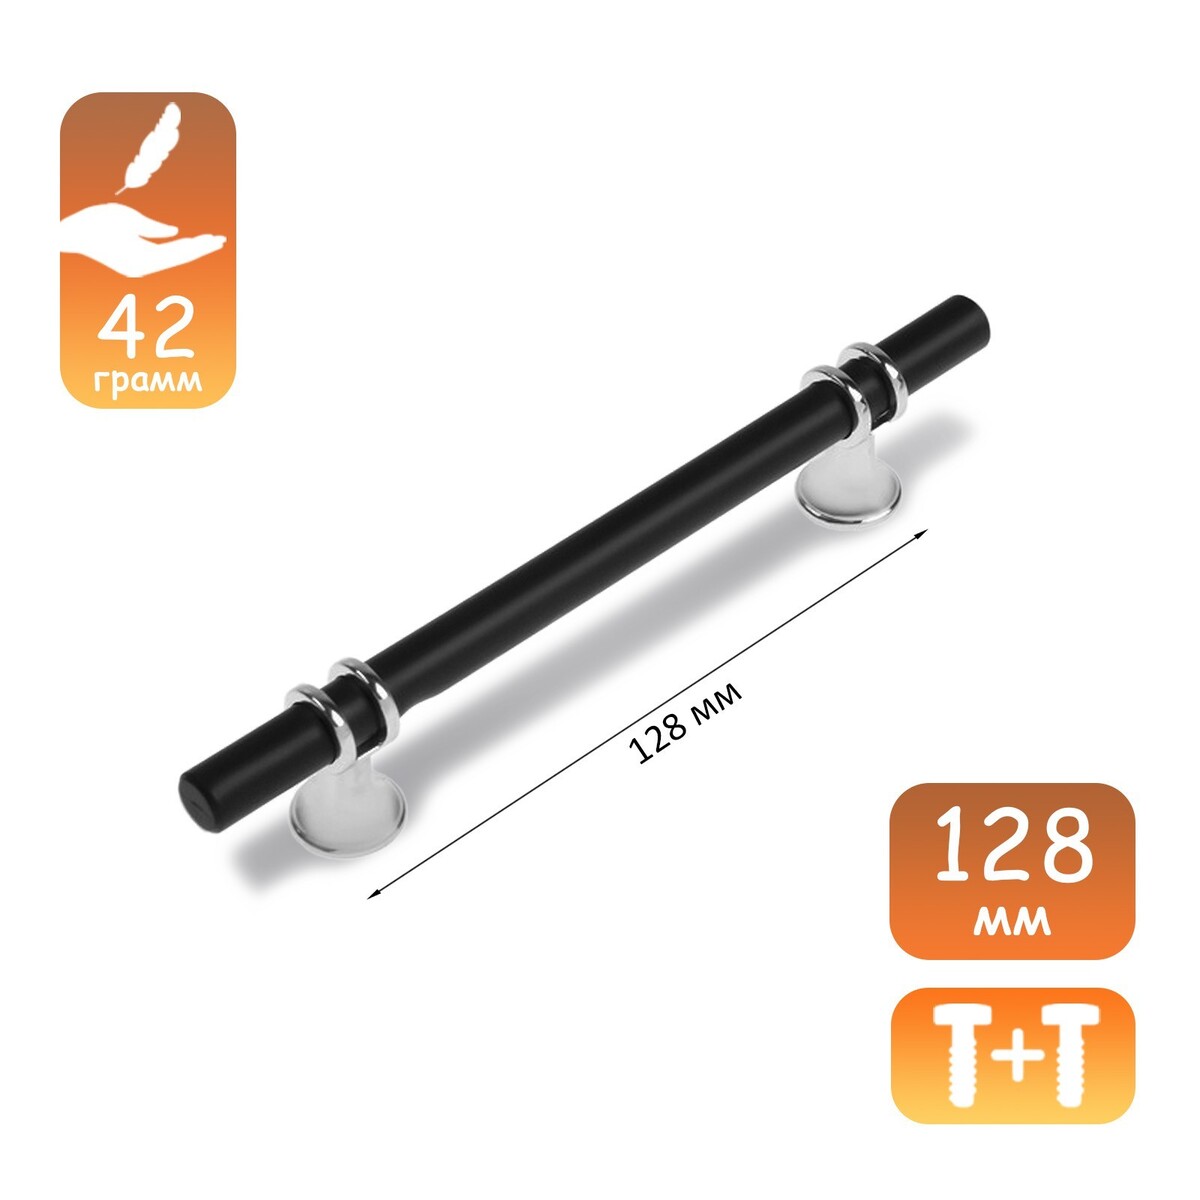 Ручка скоба cappio, м/о 128 мм, d=12 mm, пластик, цвет хром/черный веер пластик текстиль h 26 5 см